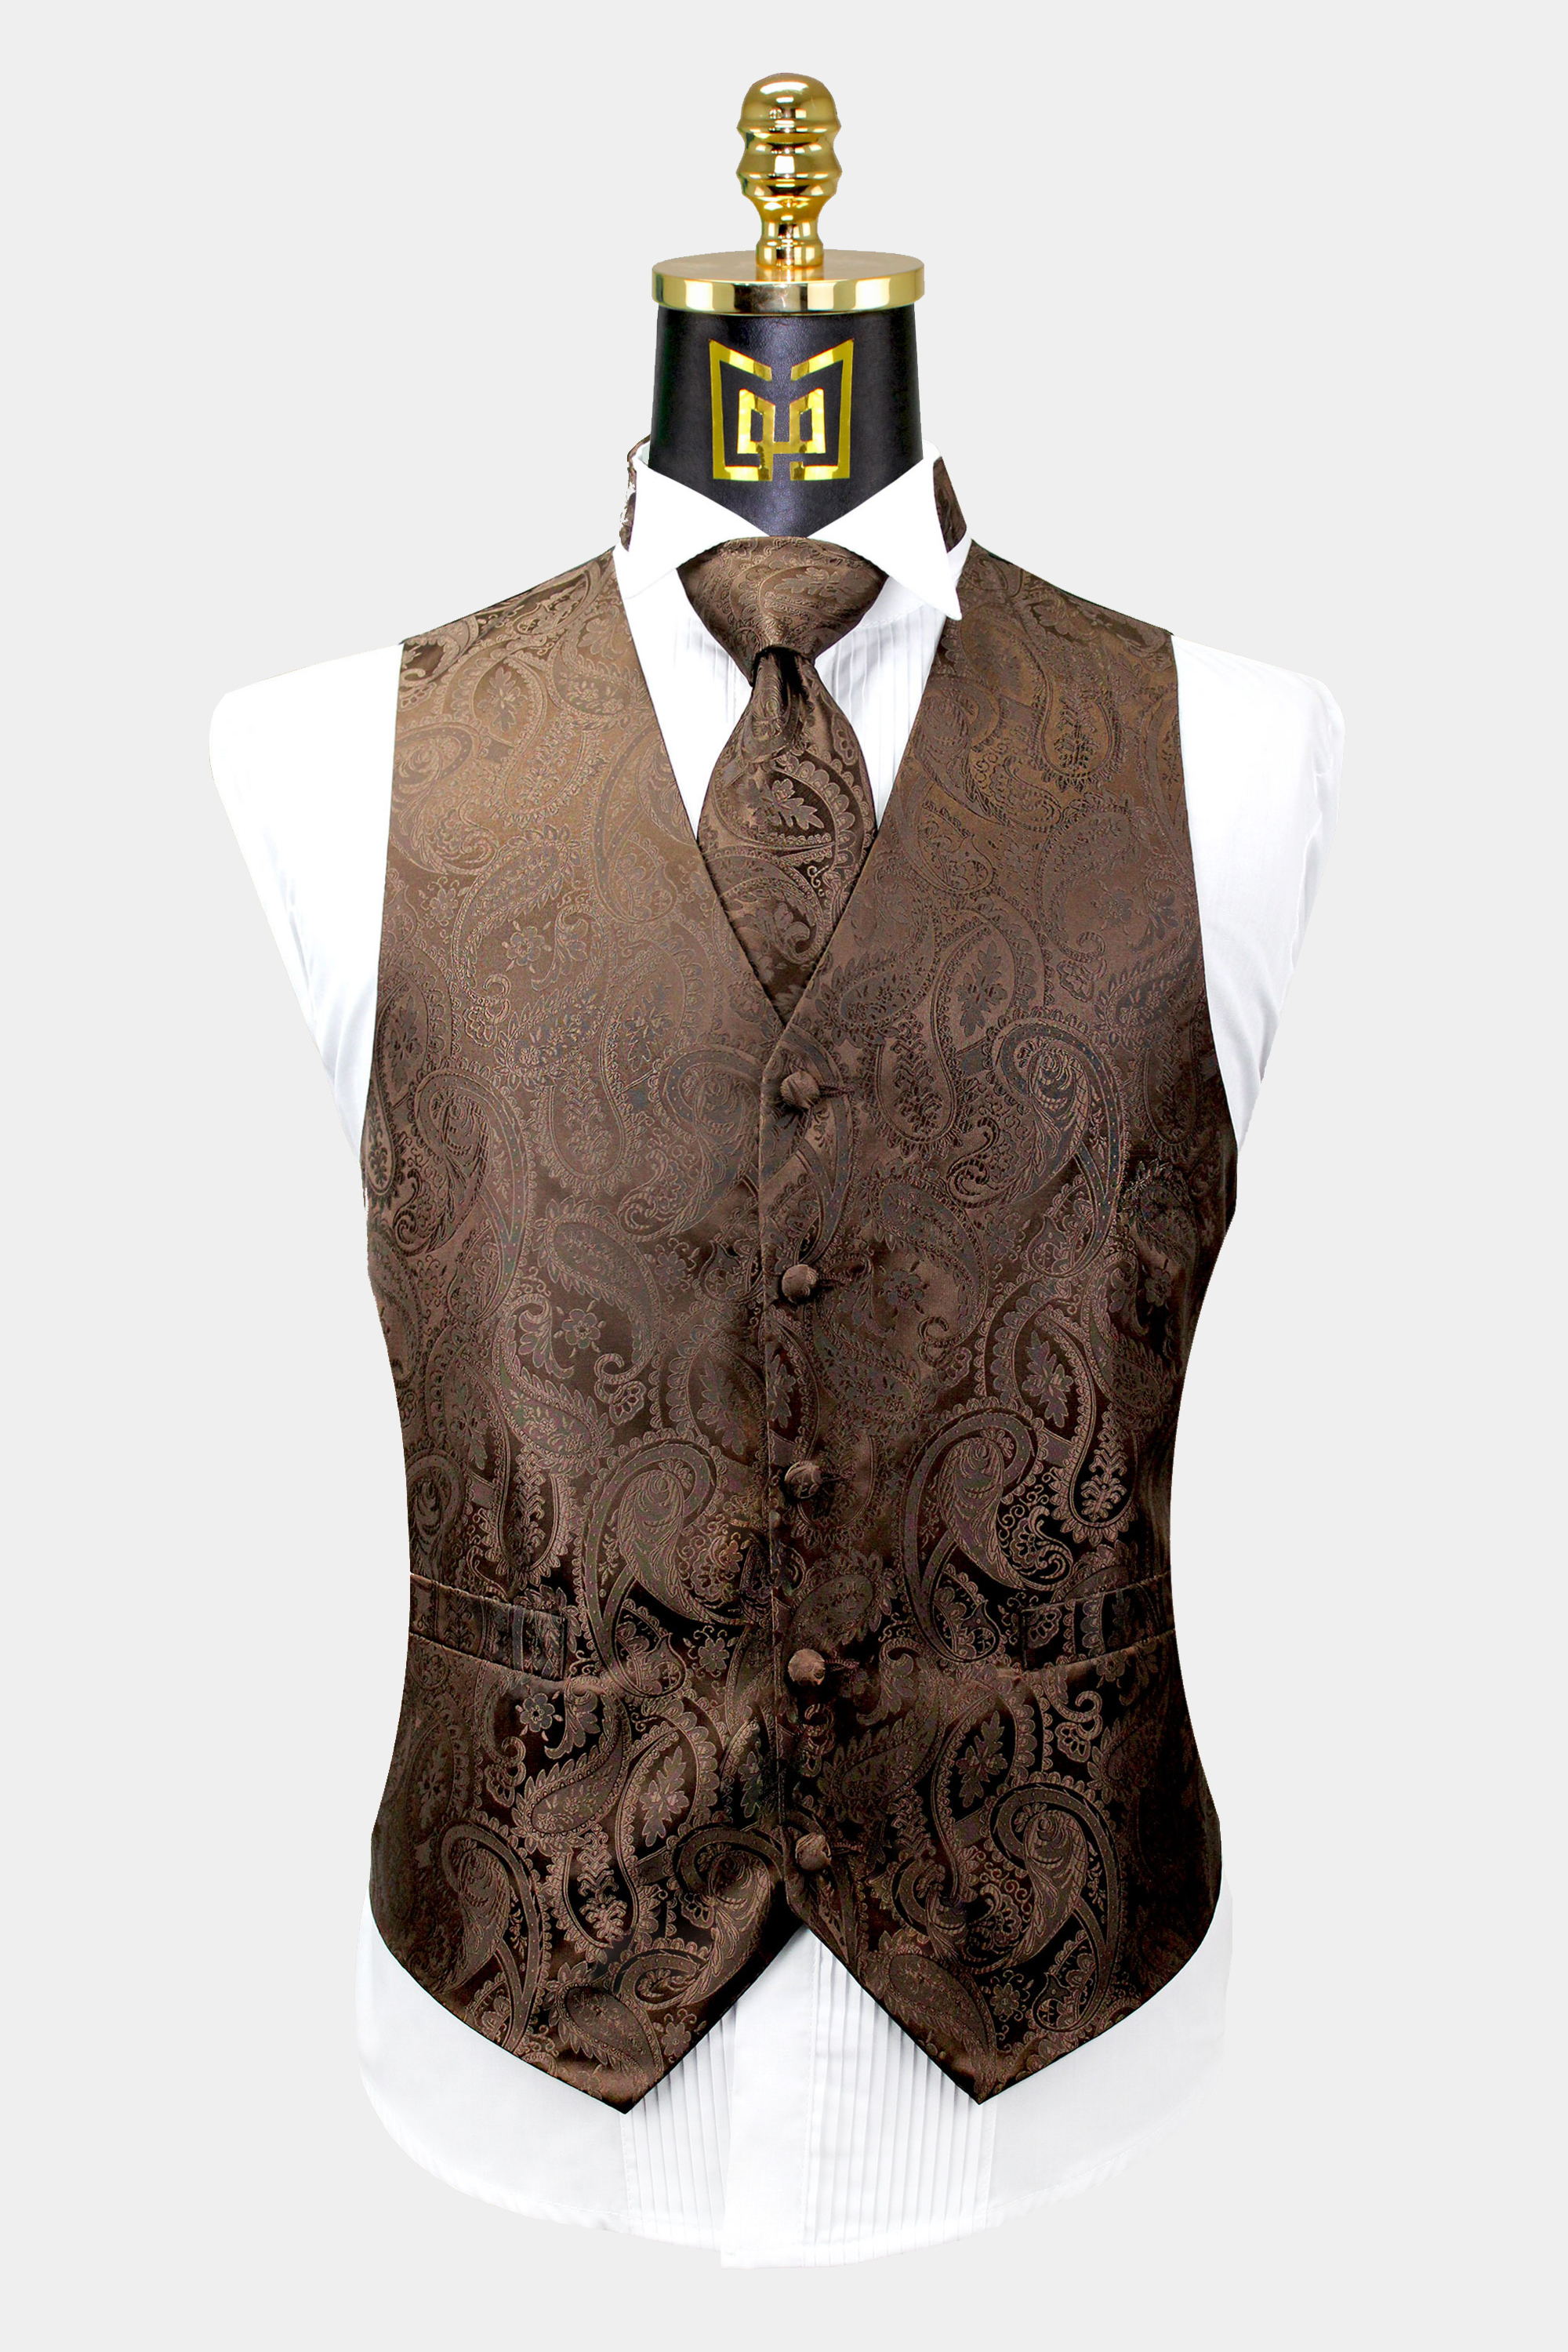 Brown-Paisley-Vest-and-Tie-Set-Groom-Wedding-Tuxedo-Vest-Waistcoat-from-Gentlemansguru.com_